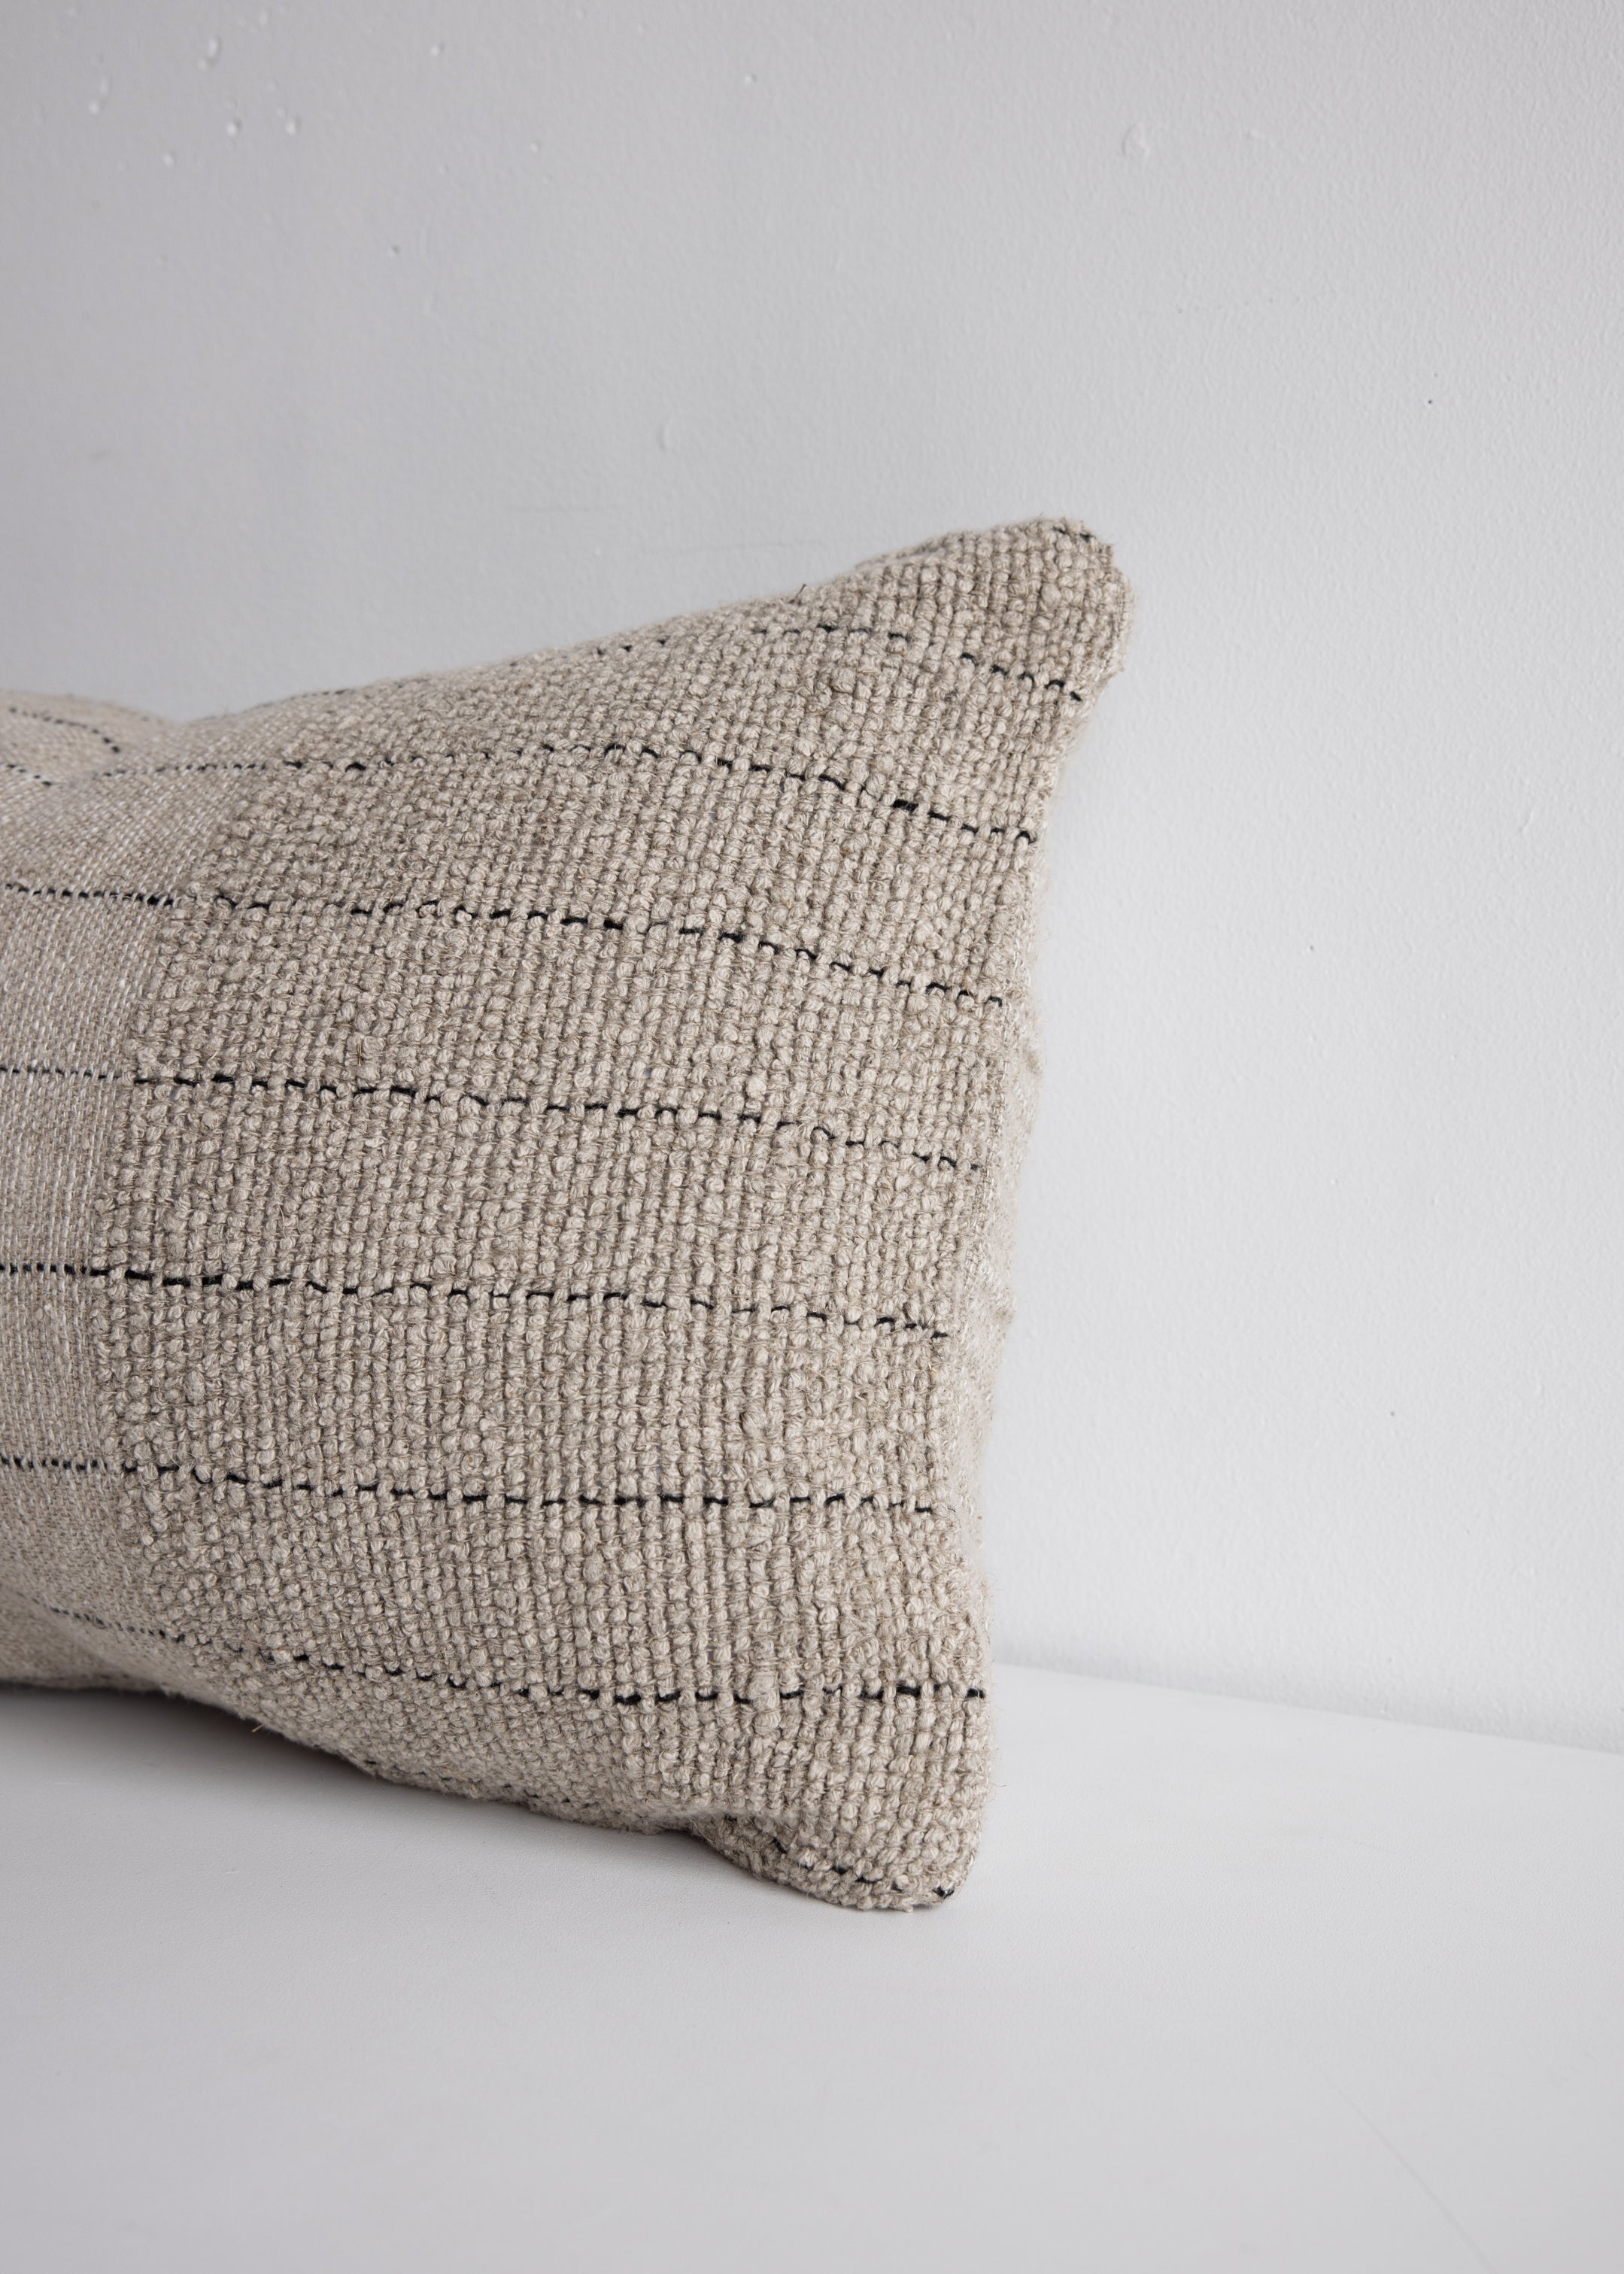 Mayla Linen Cushion Cover / 40 x 60